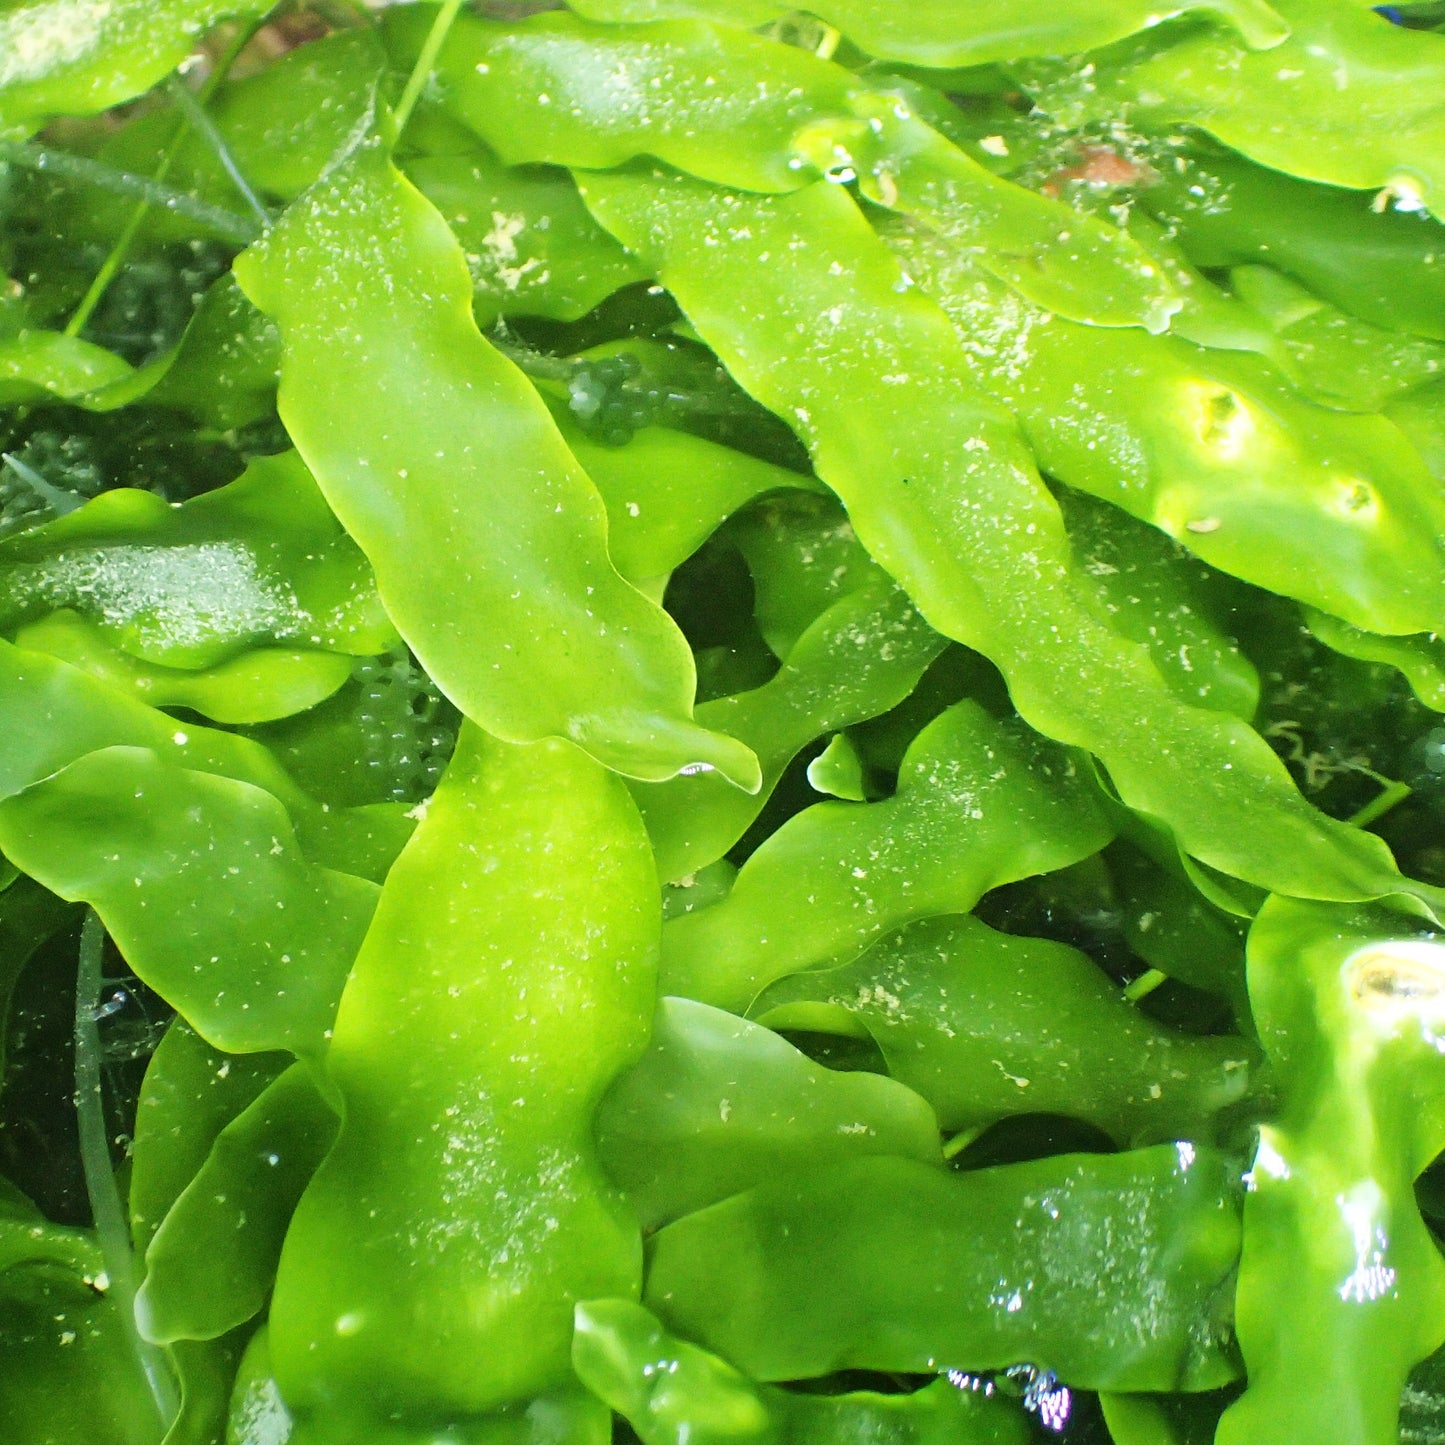 UK Grown Caulerpa Prolifera Algae